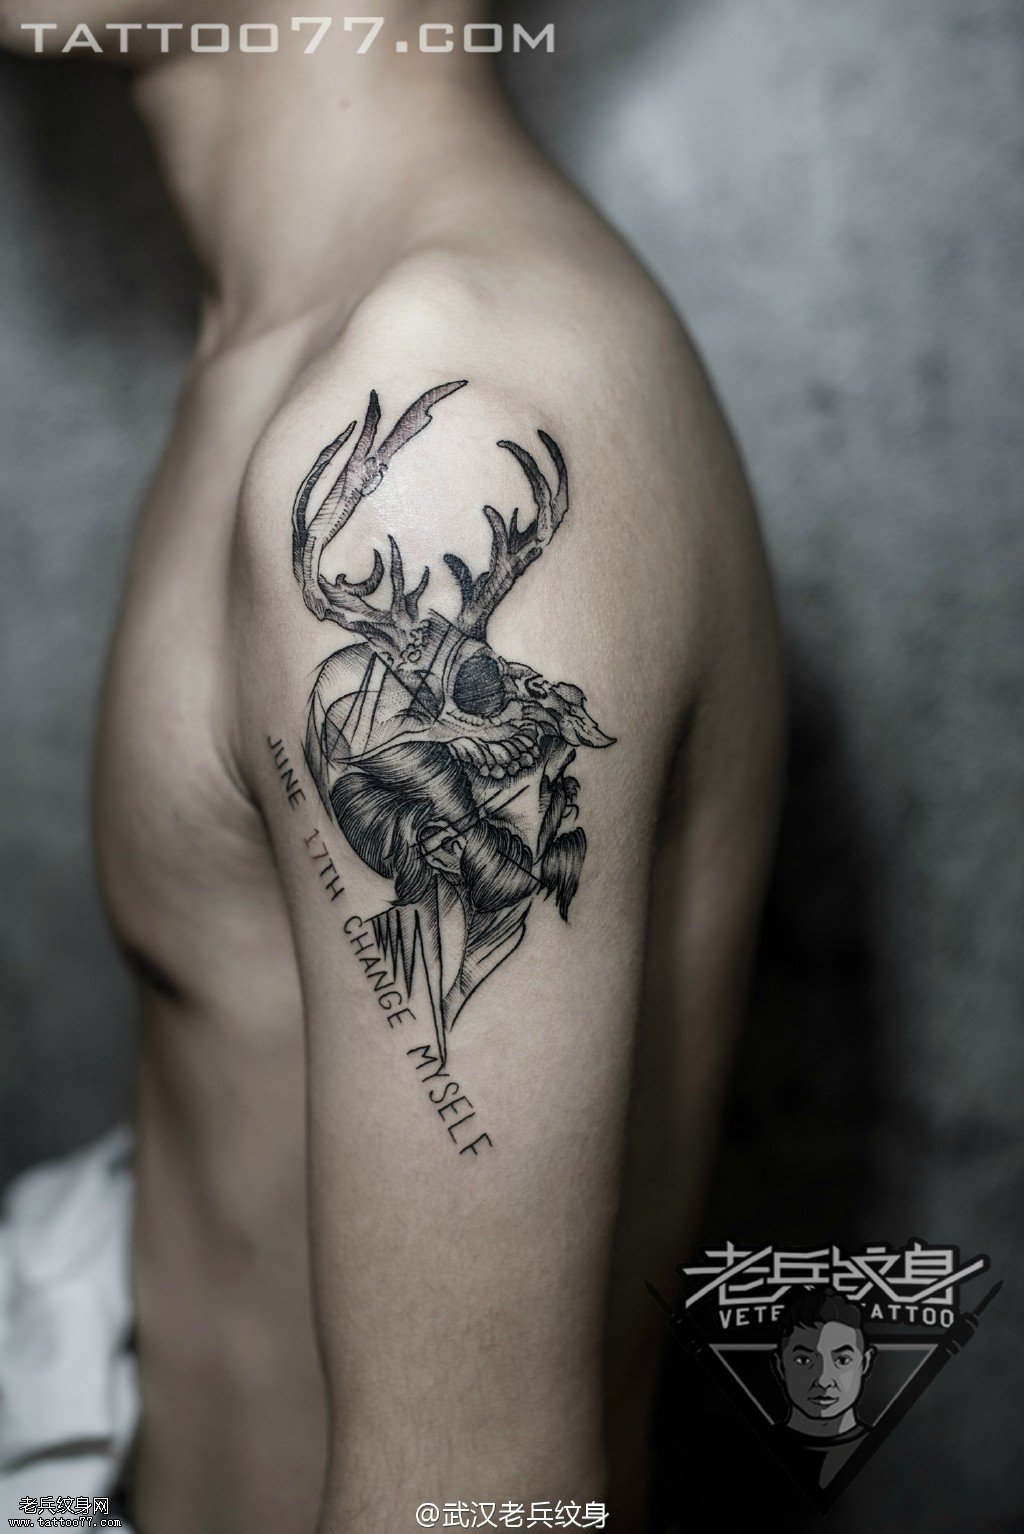 大臂欧美男人鹿骷髅纹身图案作品